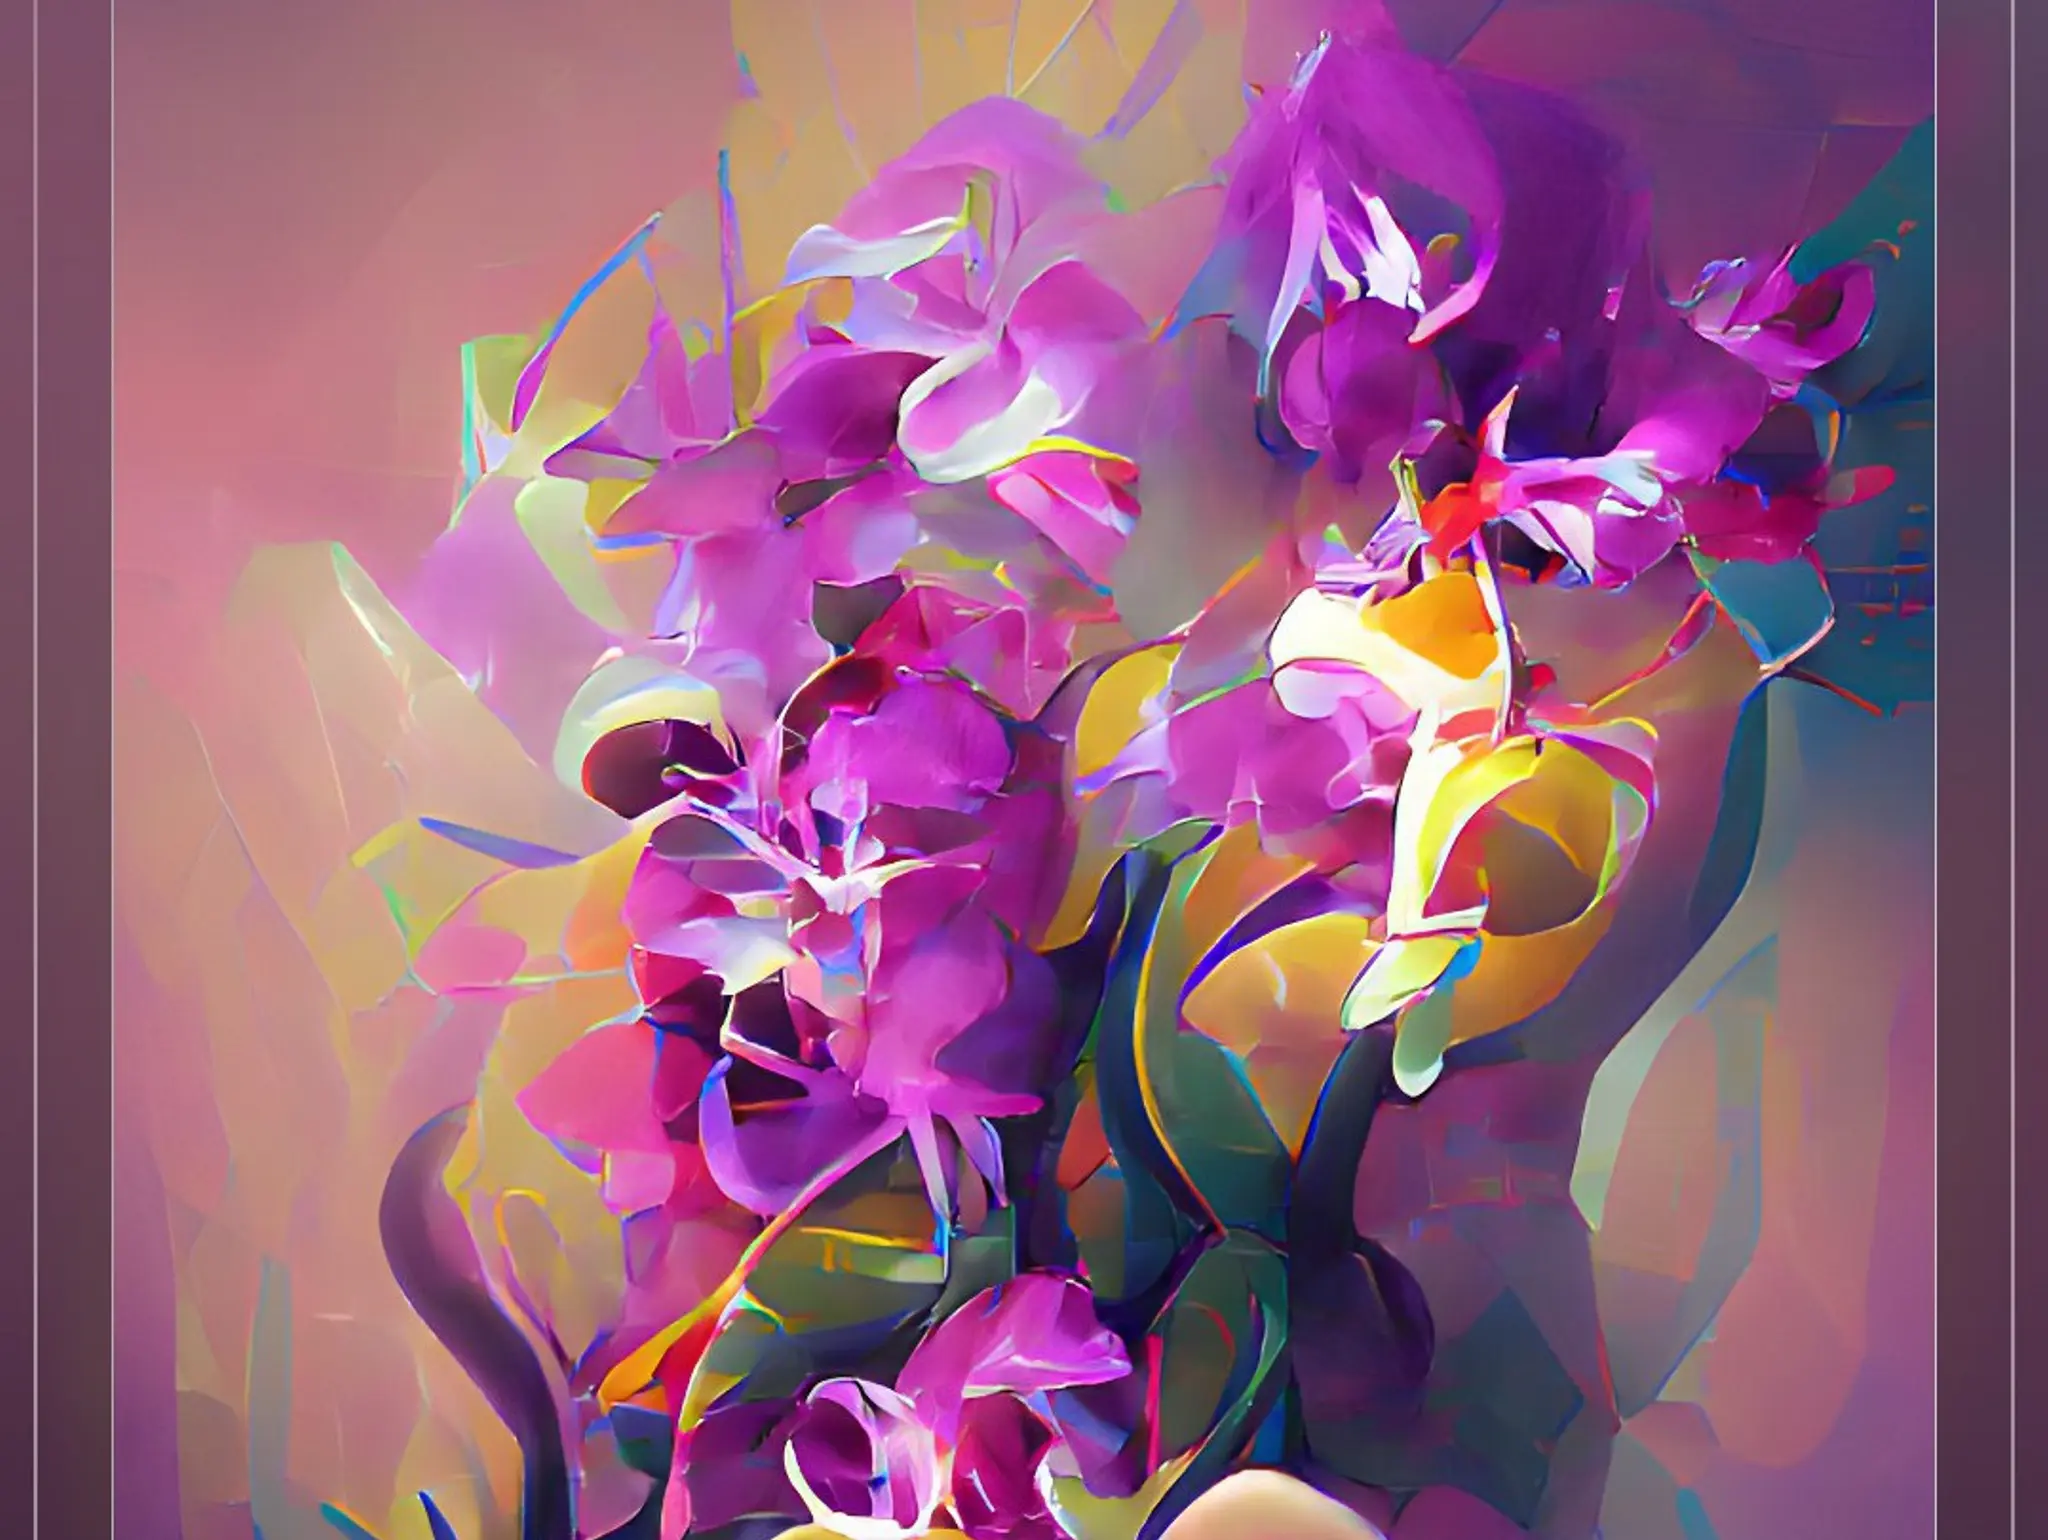 AI Art" "Orchids"